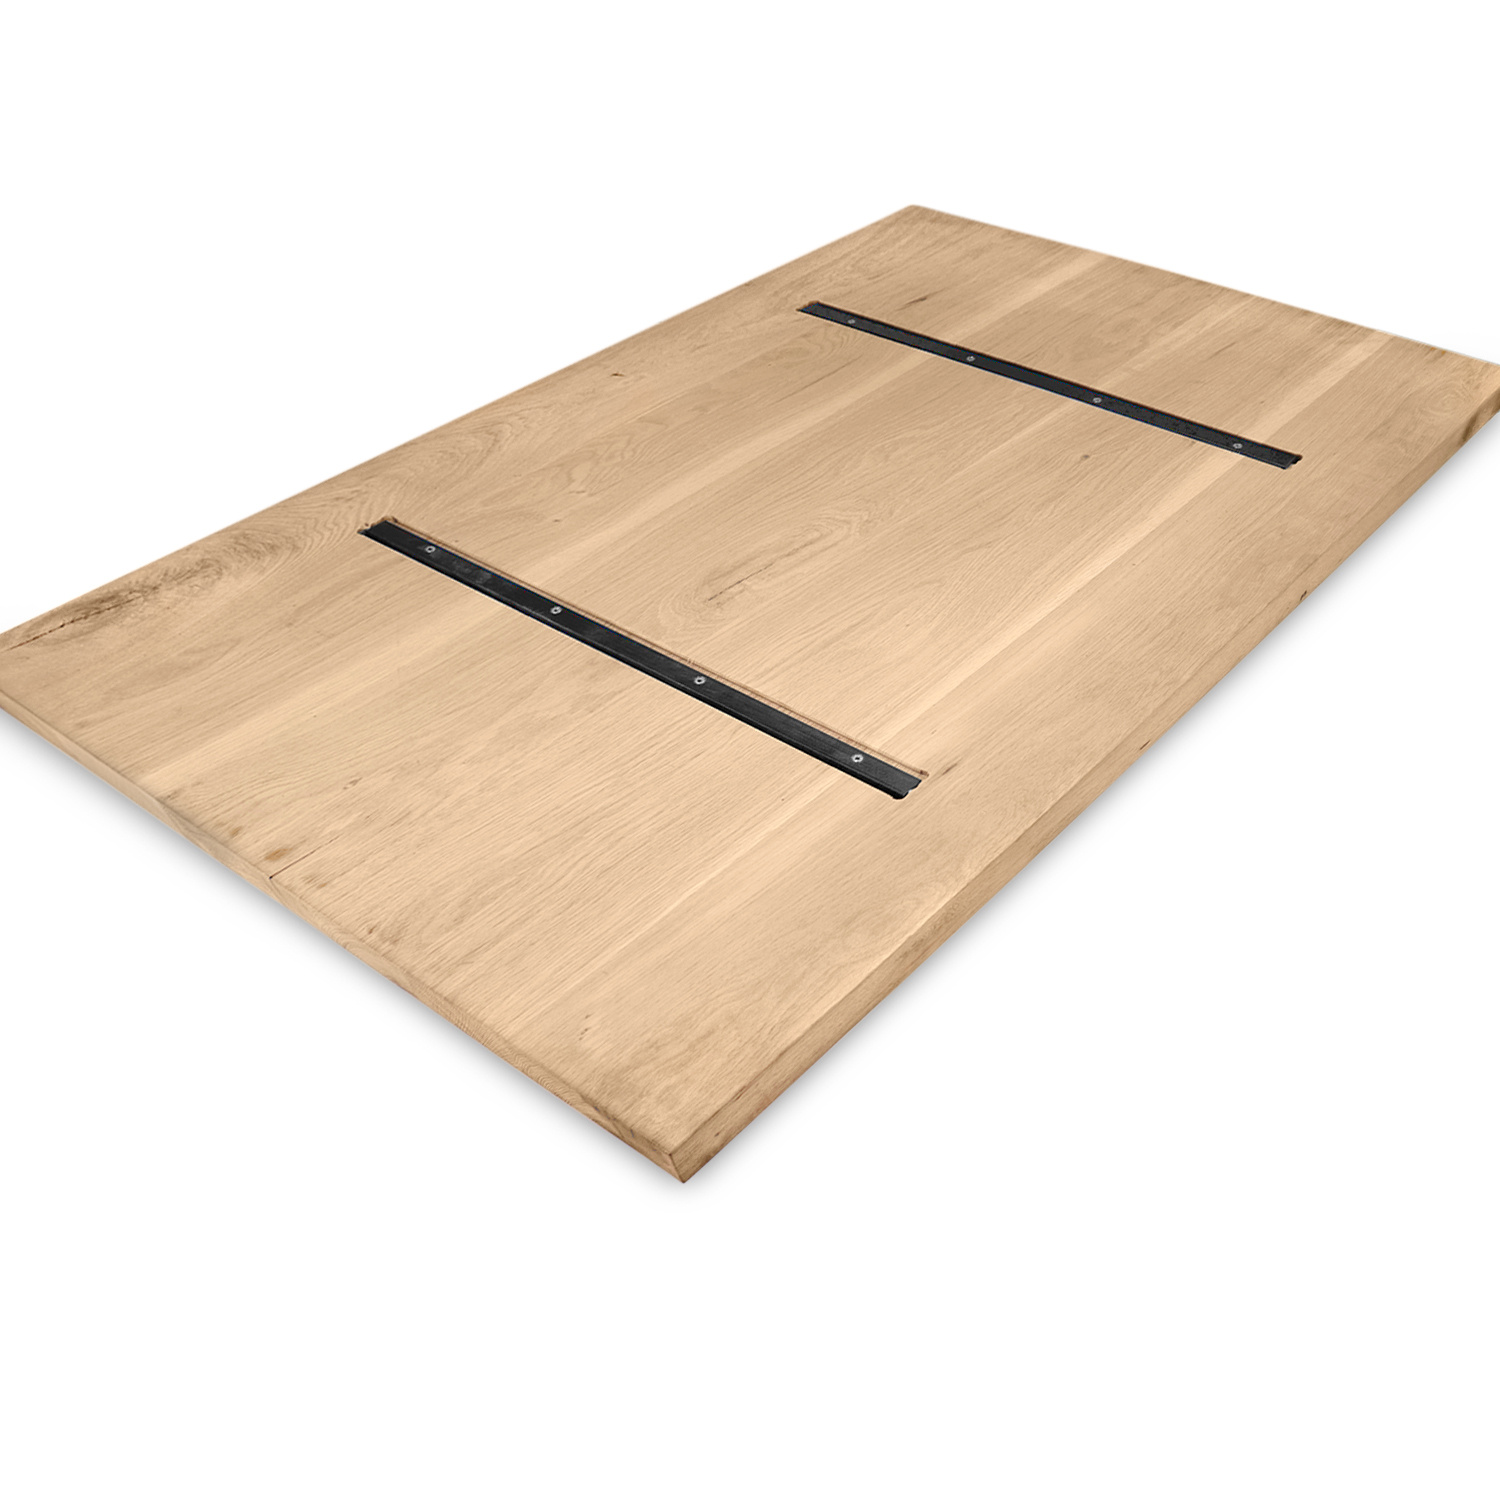  Eiken tafelblad - 2,5 cm dik (1-laag) - Diverse afmetingen - extra rustiek Europees eikenhout - met extra brede lamellen (circa 14-20 cm) - verlijmd kd 8-12%